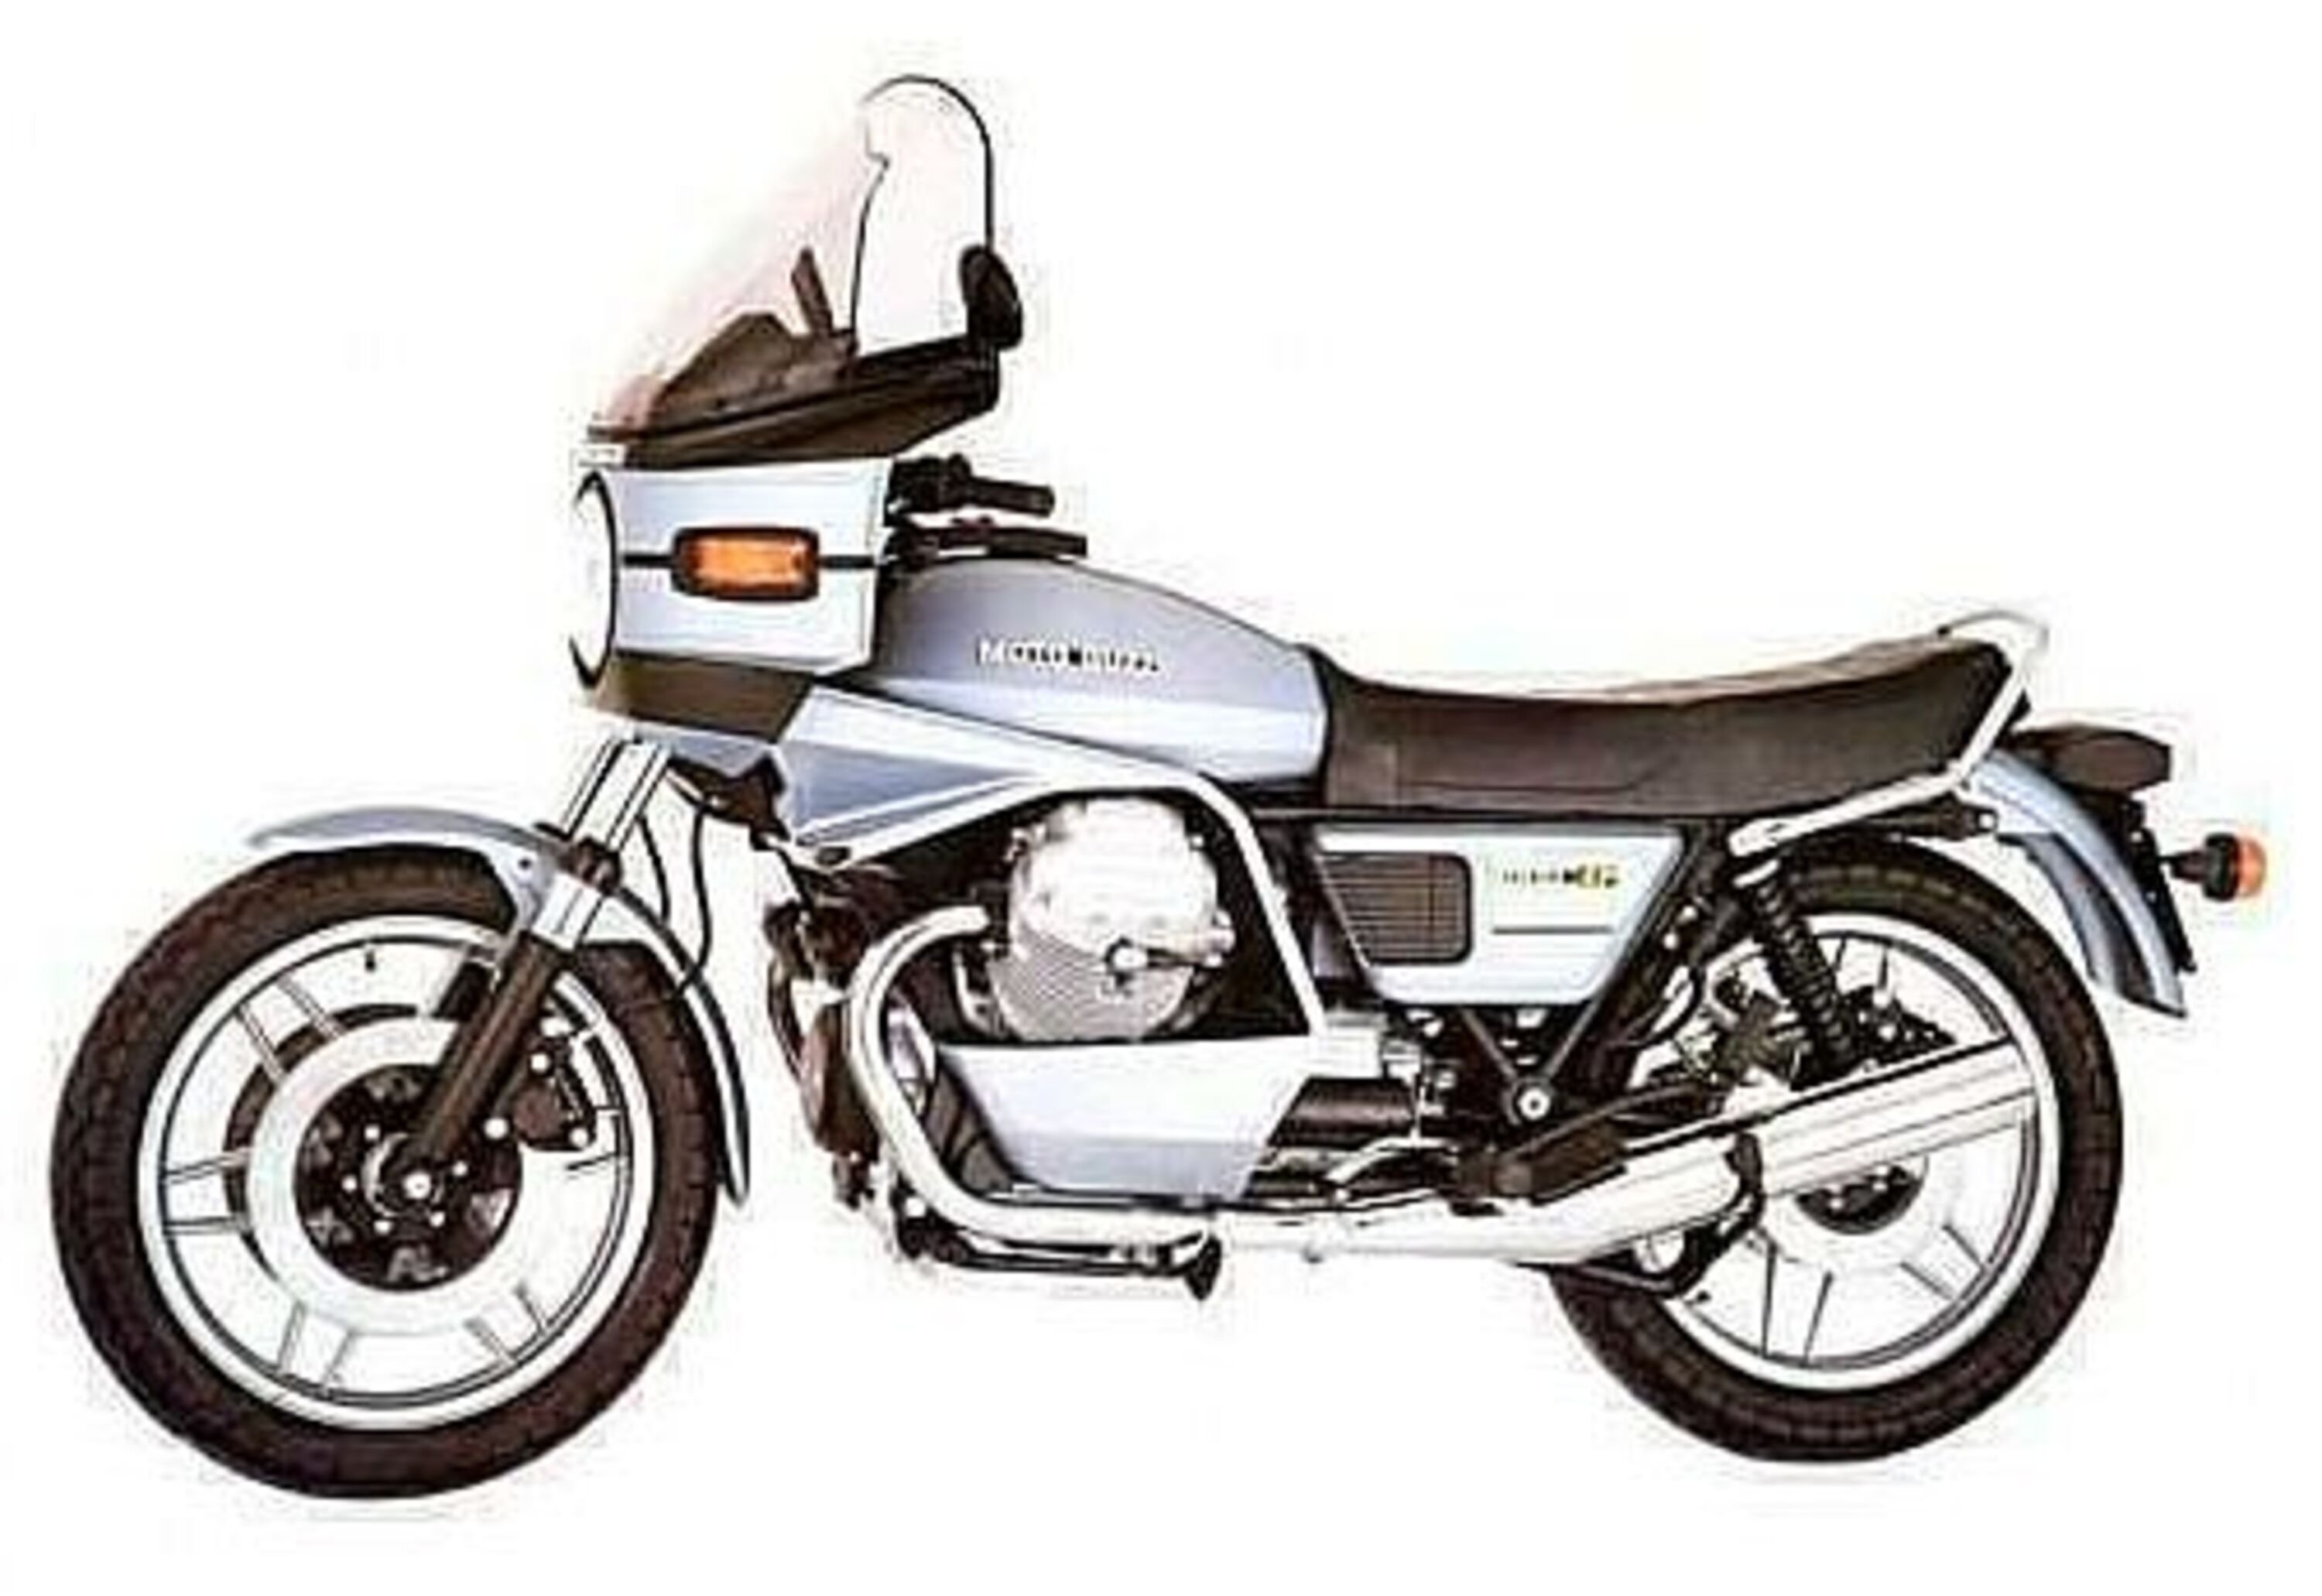 Moto Guzzi SP 1000 SP 1000 (1978 - 85)